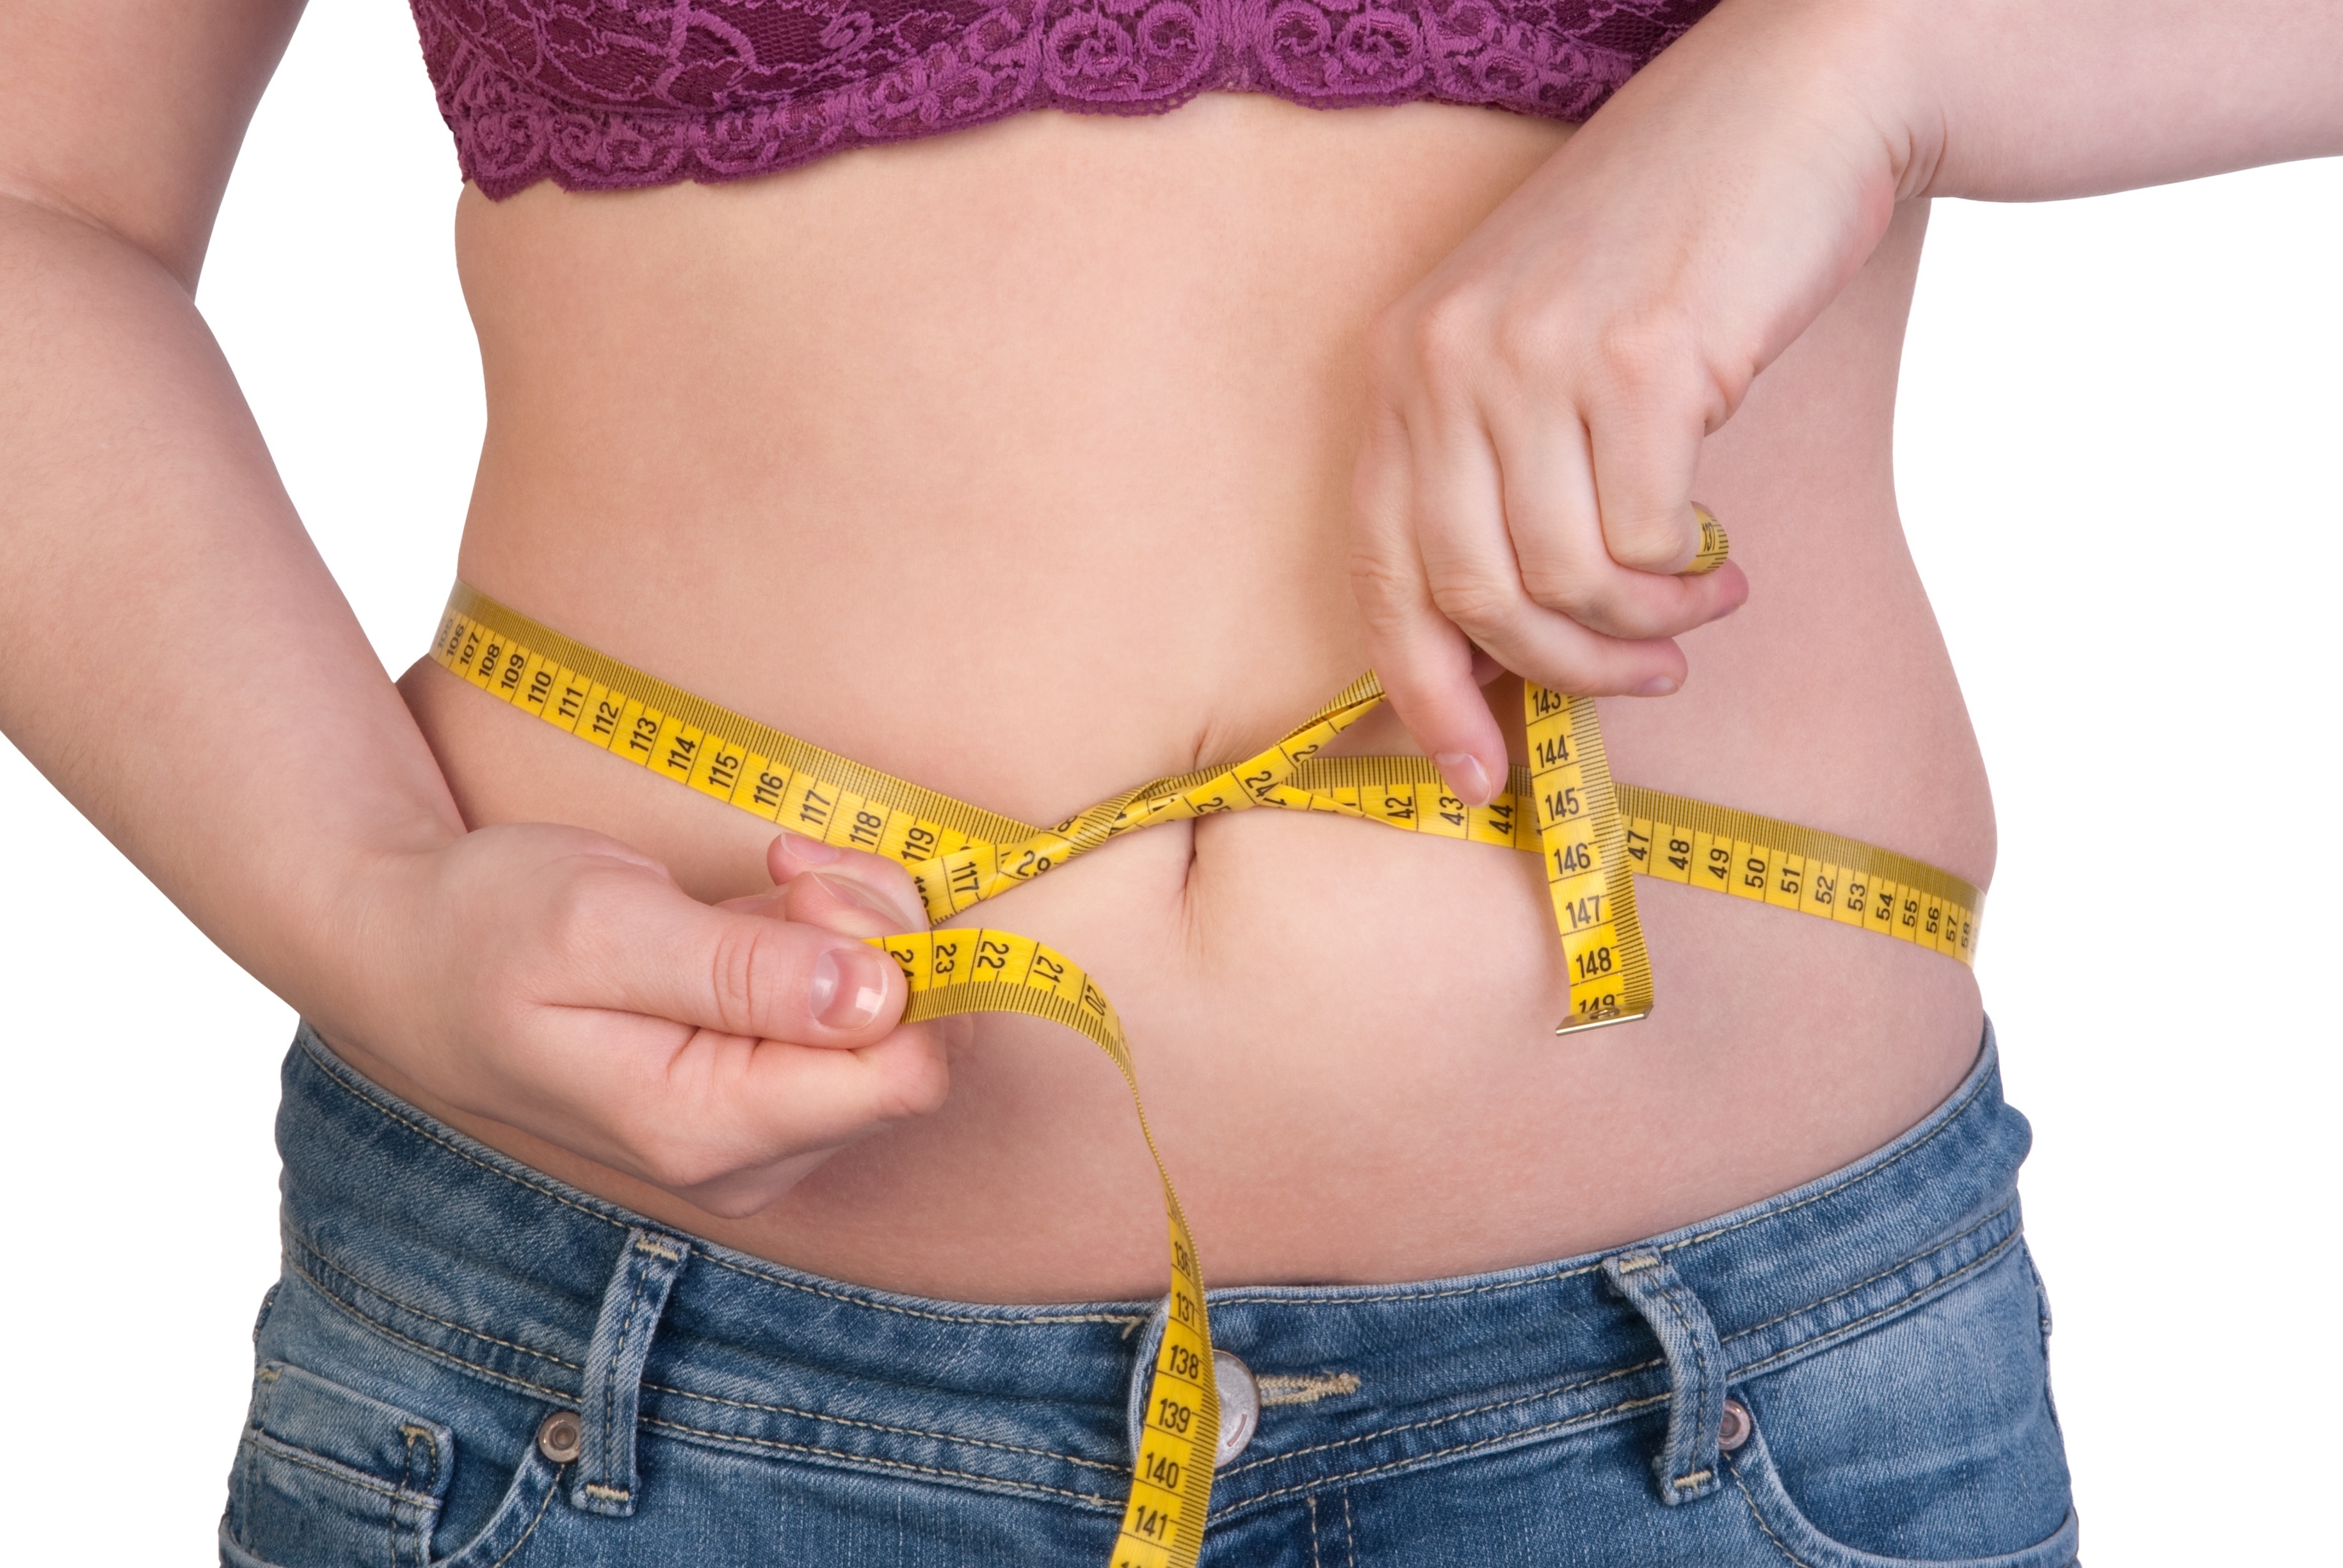 Cum sa ai un abdomen plat in 7 zile Pierde burta gras 6 zile